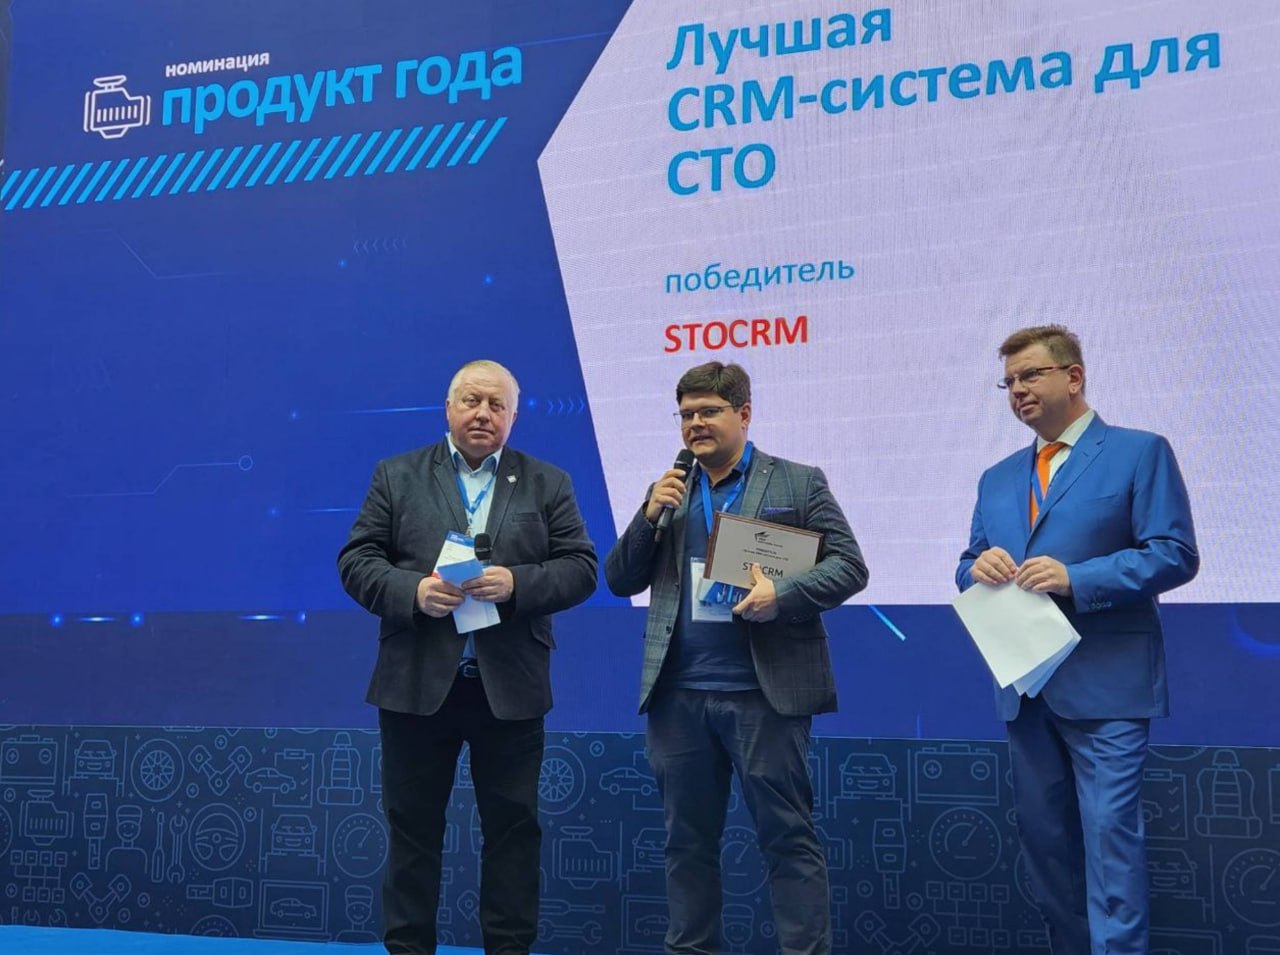 фото: Российская программа для автосервиса STOCRM признана лучшей CRM-системой для СТО